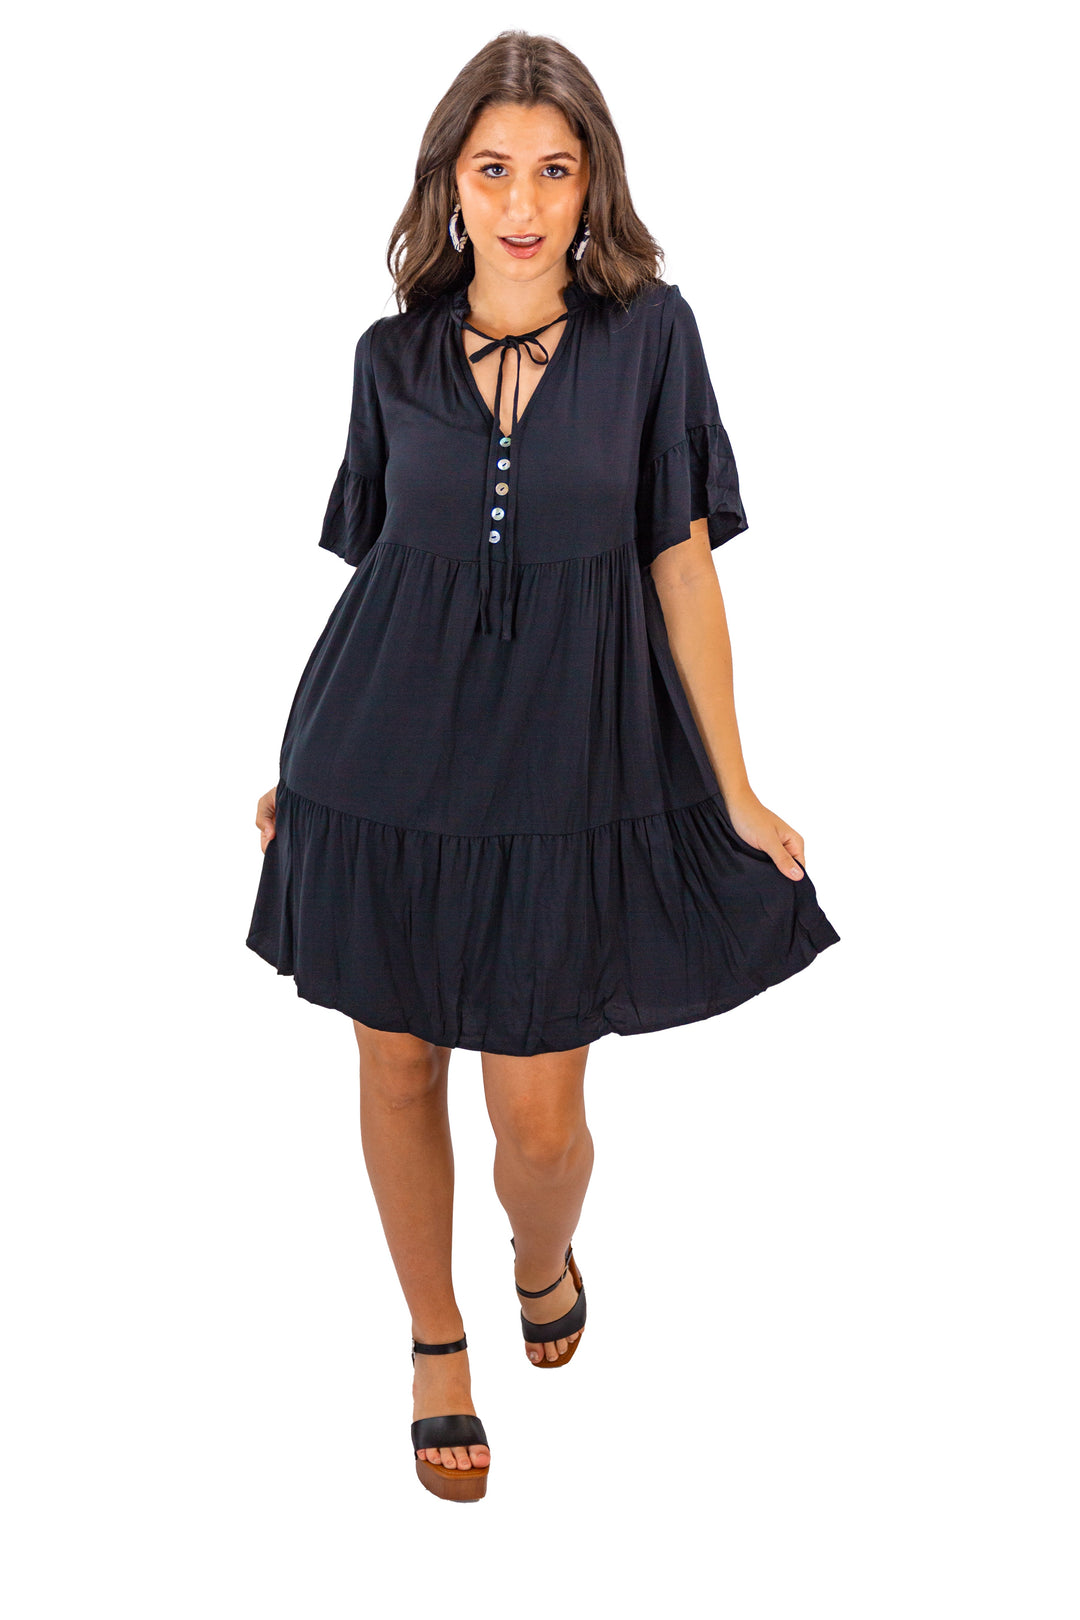 Noir Charm Black Flowy V-neck Mini Dress for Women's 